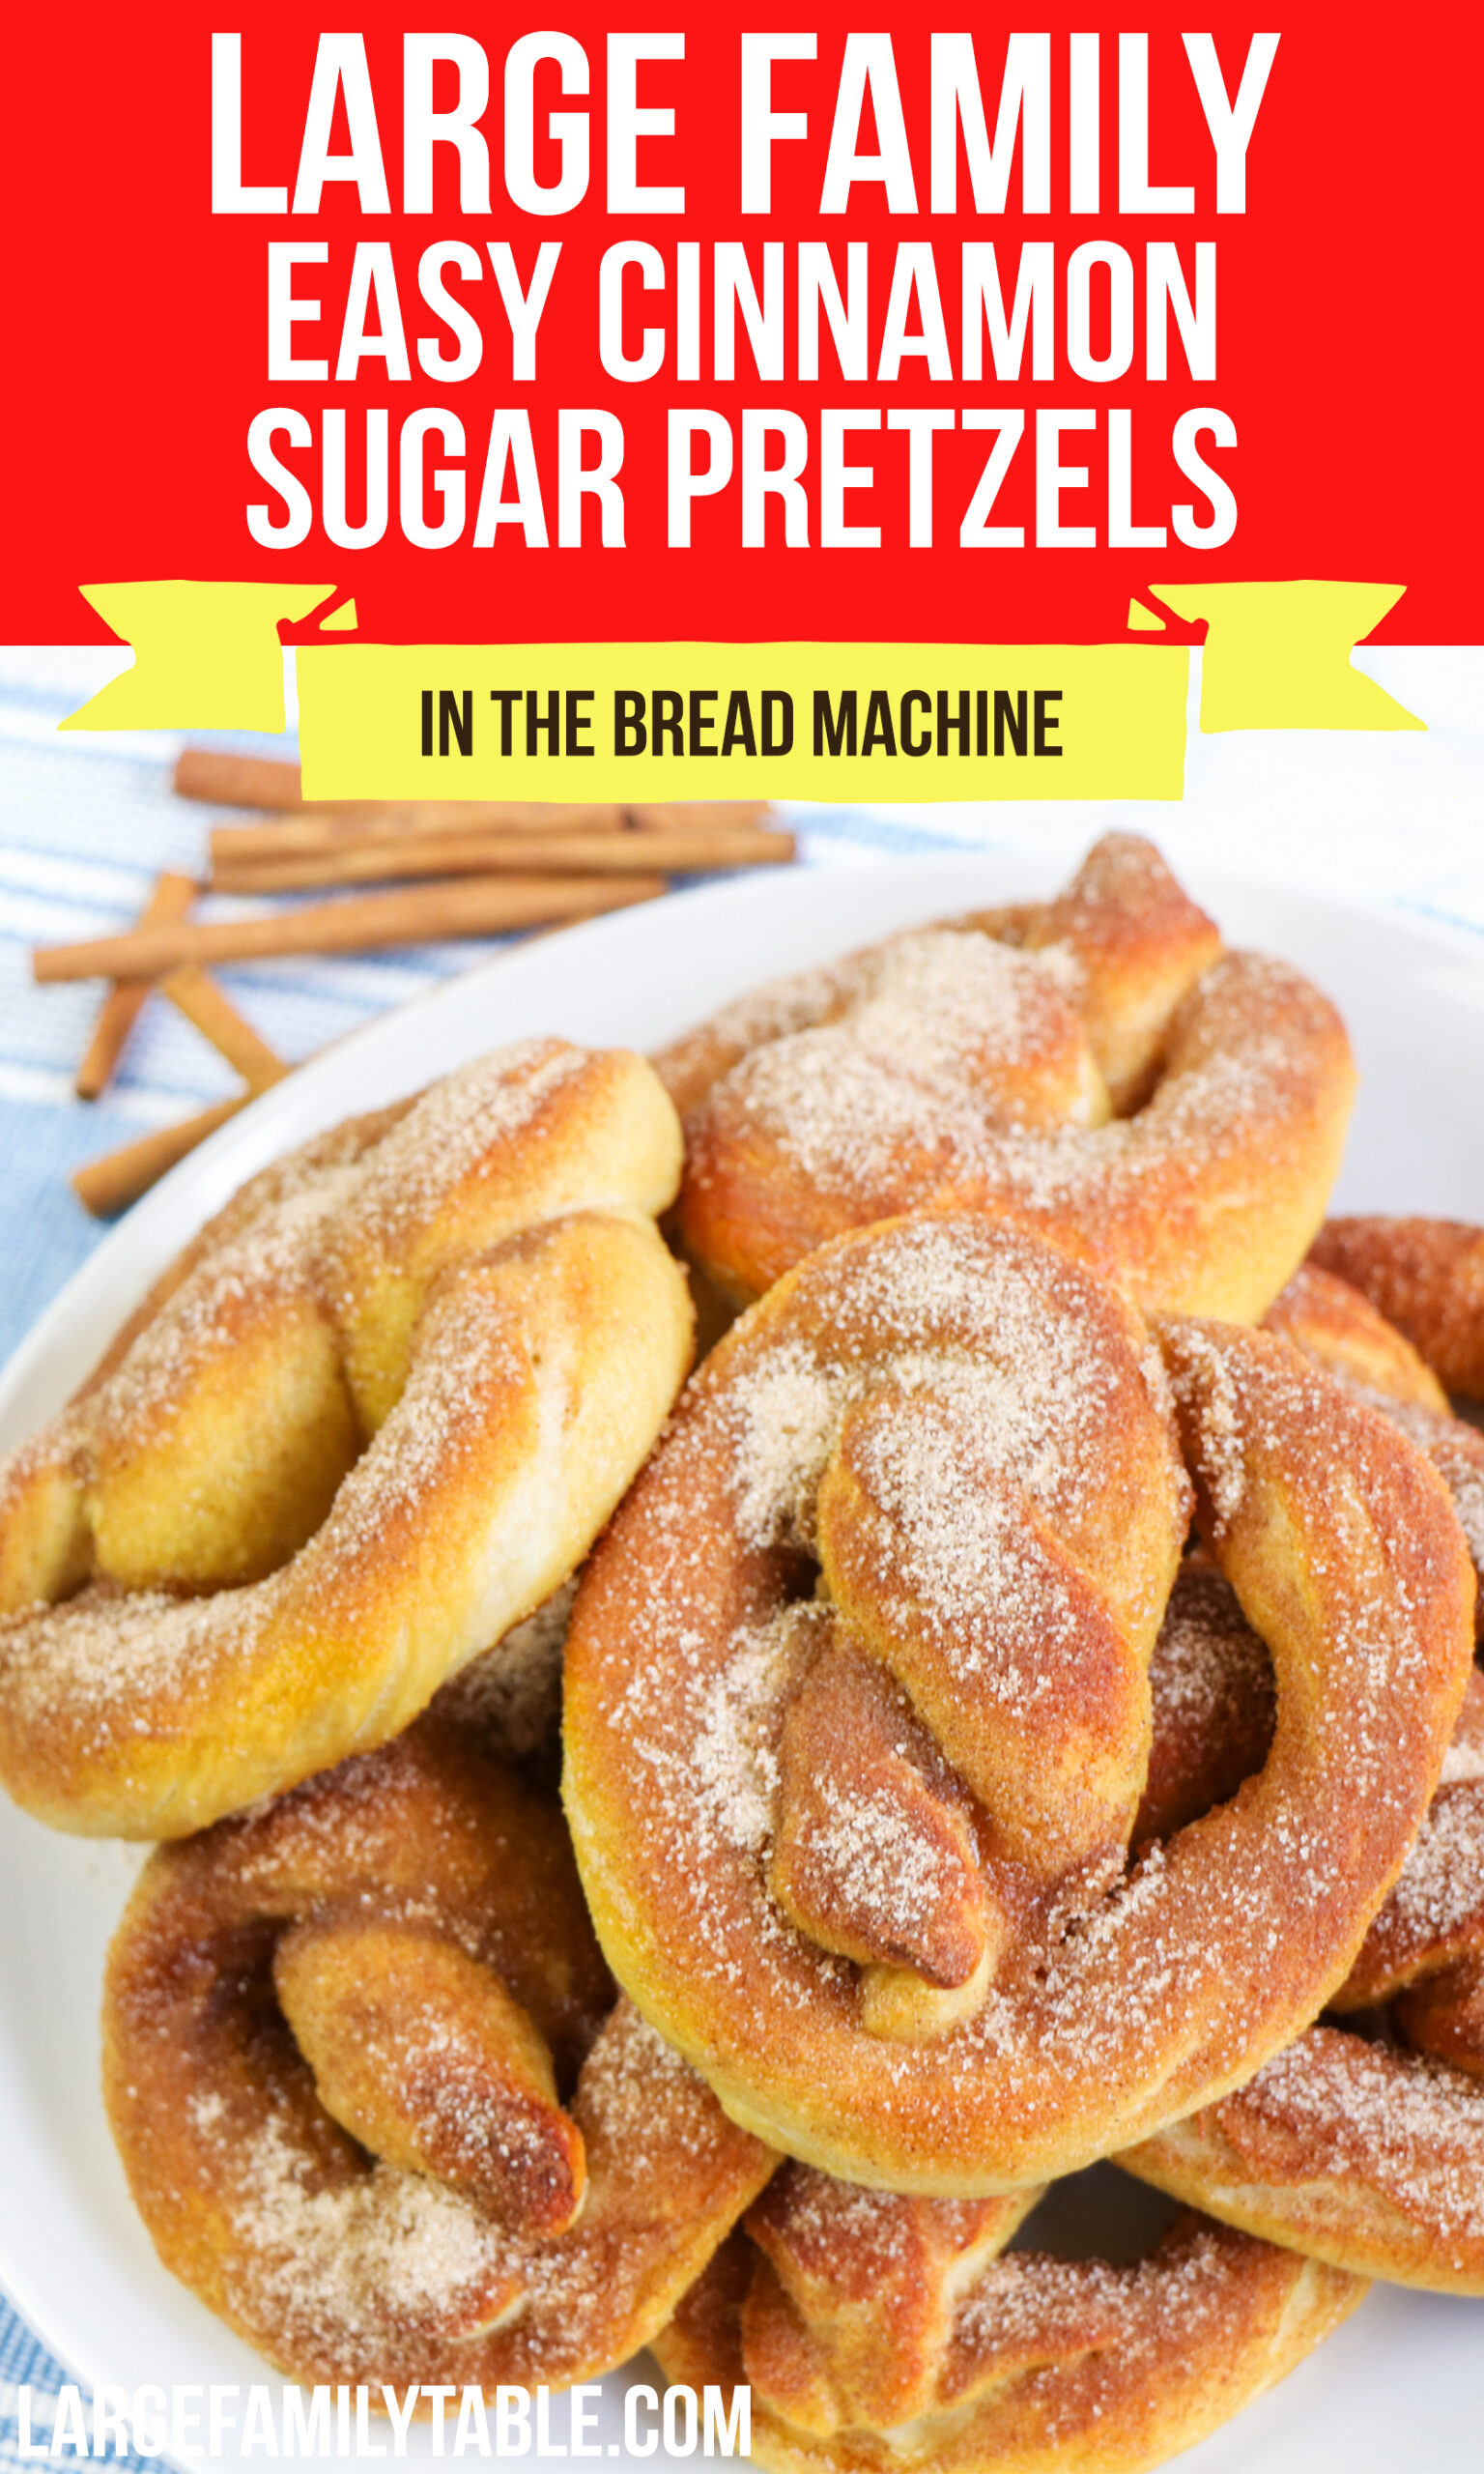 Big Family Bread Machine Cinnamon Sugar Pretzels | Easy Snack Idea!